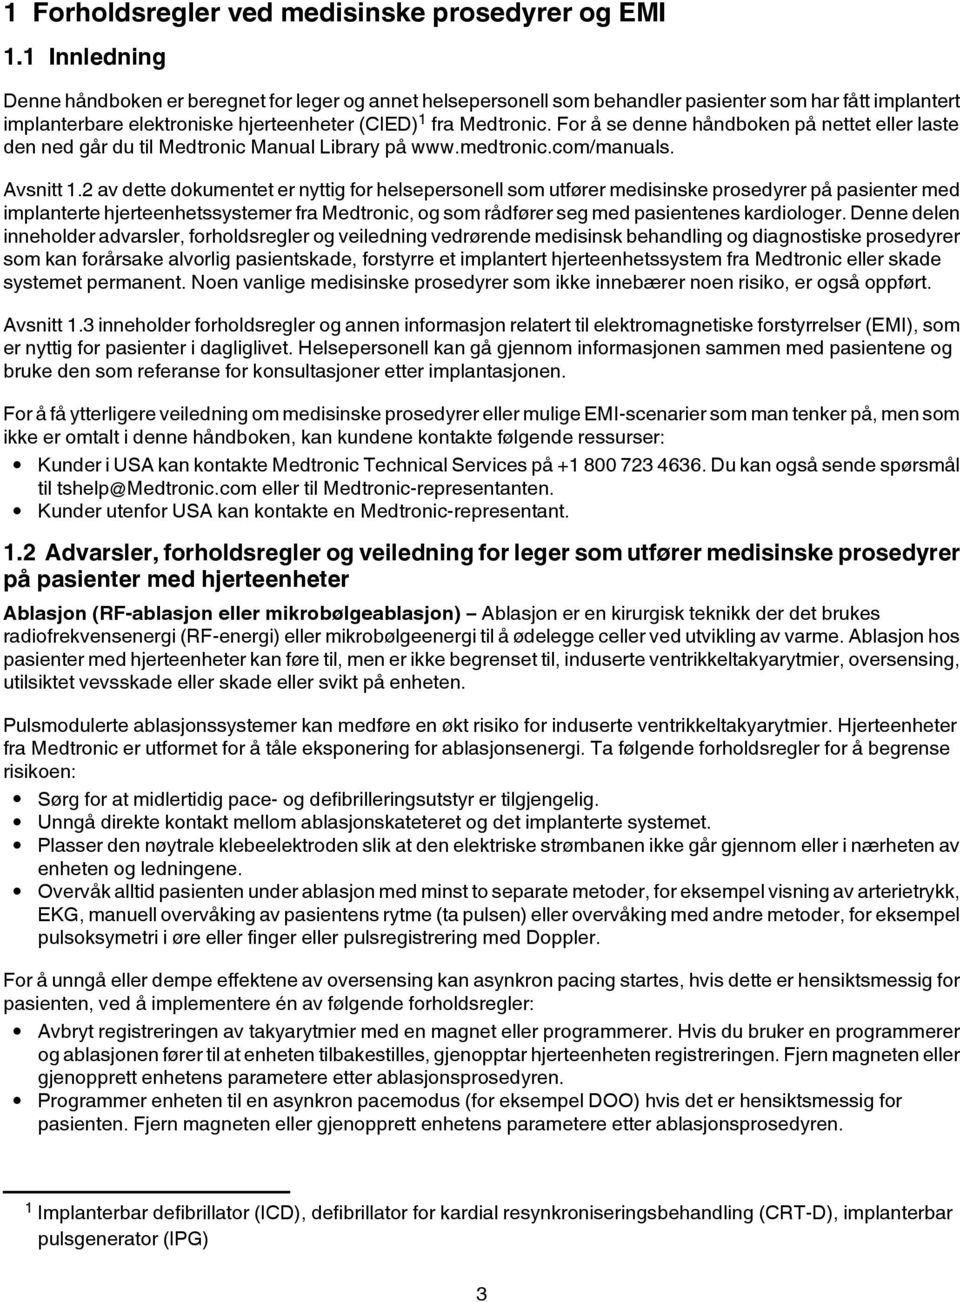 Forholdsregler ved medisinske prosedyrer og EMI - PDF Free Download